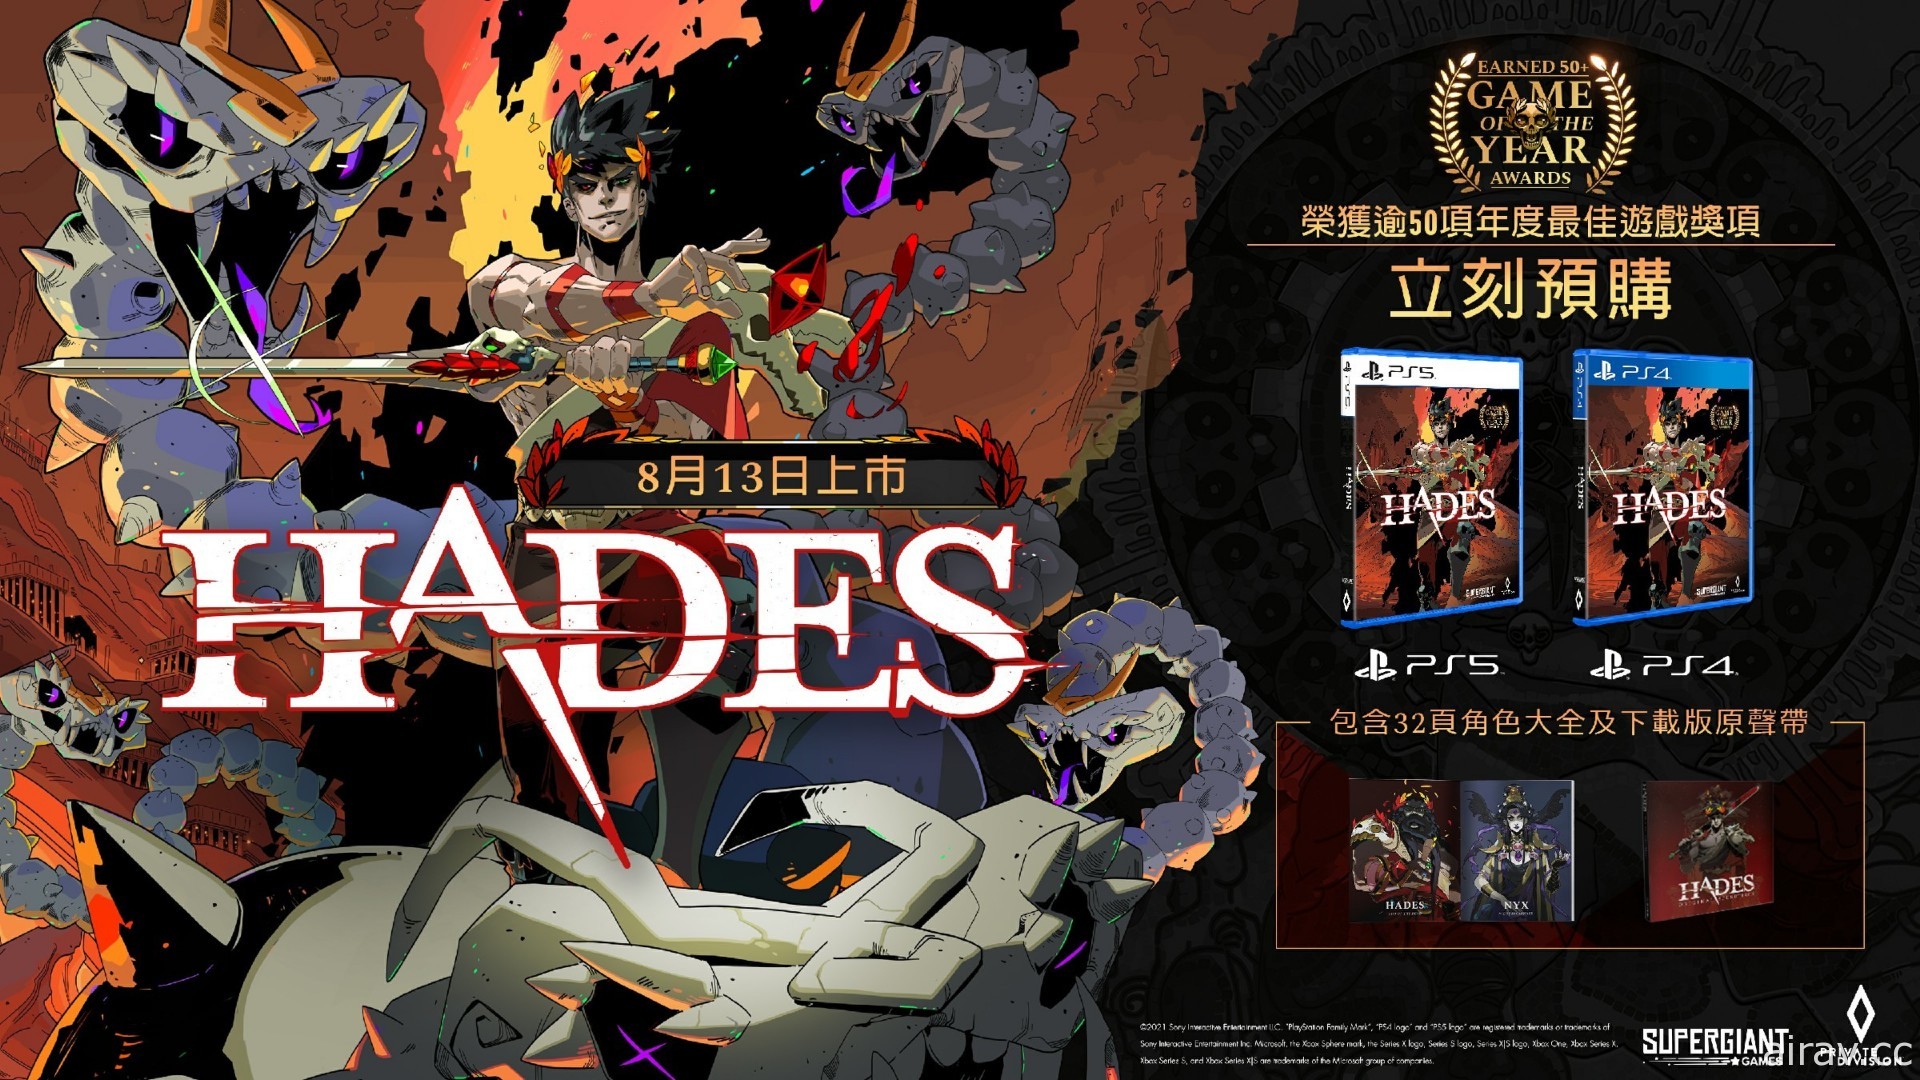 《黑帝斯 Hades》将于 8 月 13 日在台湾推出 PS5、PS4 盒装版